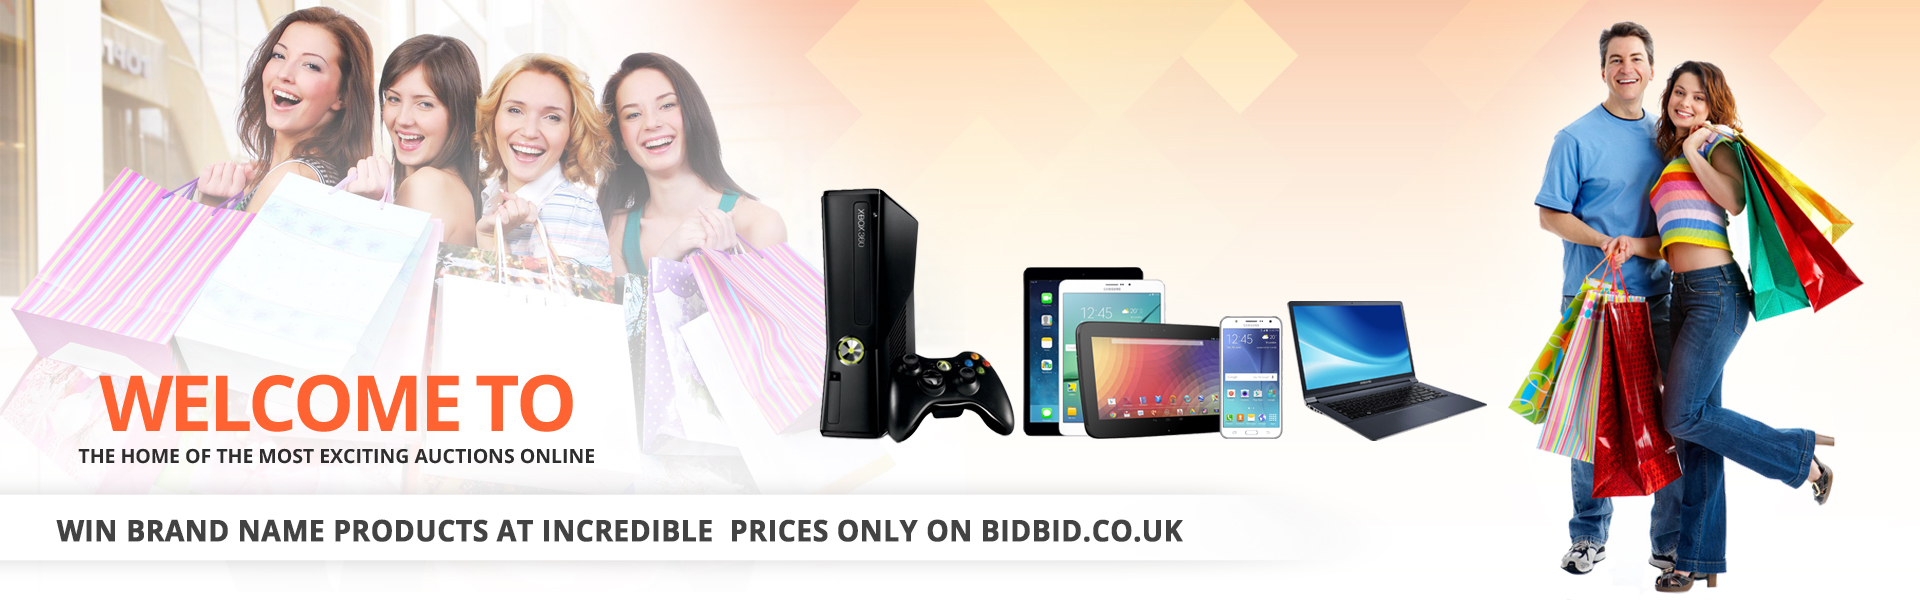 bidbid.co.uk